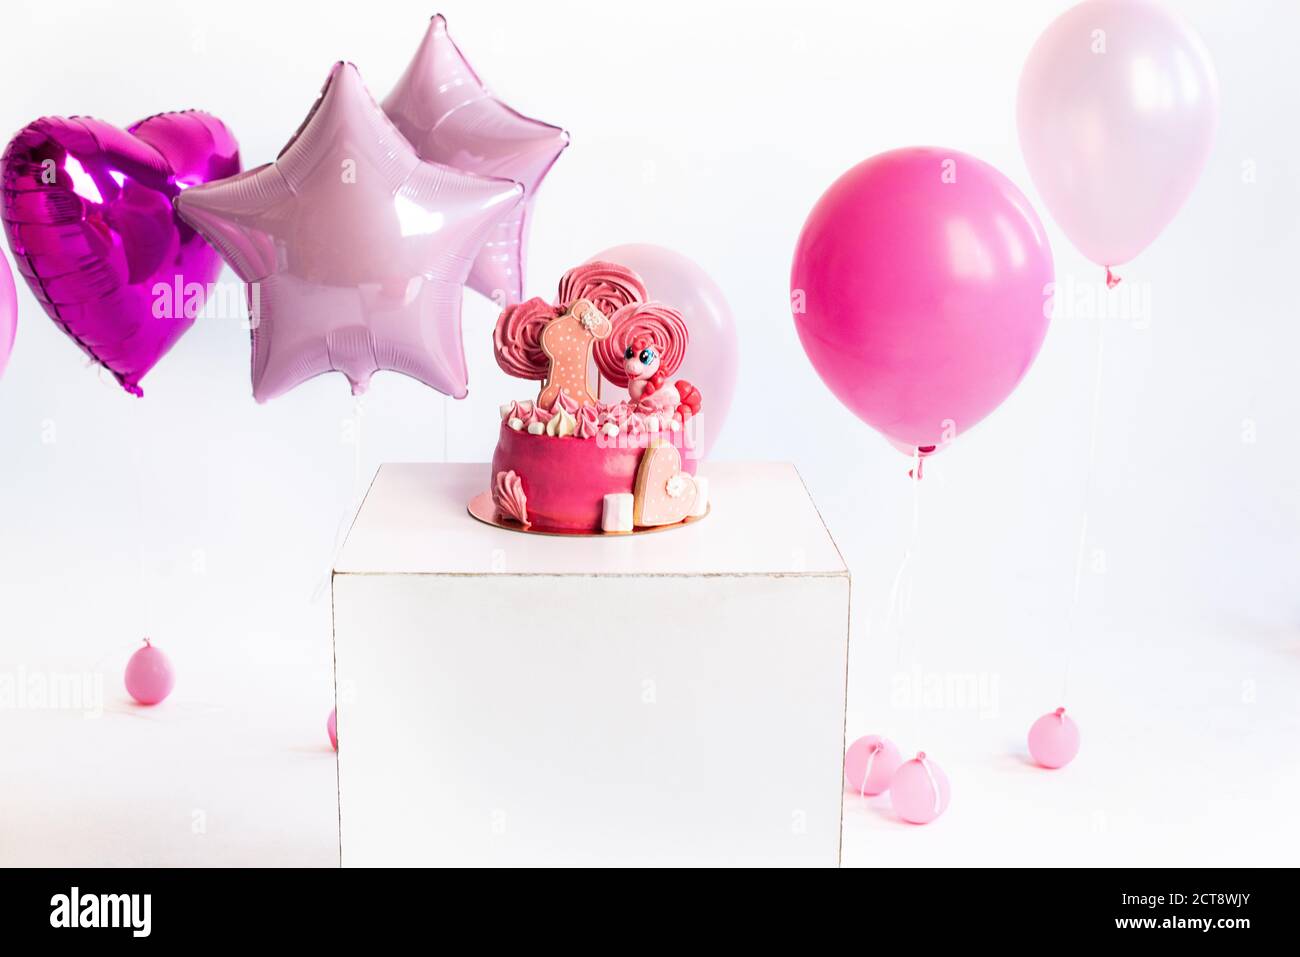 Gâteau rose pour l'anniversaire d'une fille d'un an. Ballons. unicorn. Russie 2020, août Banque D'Images